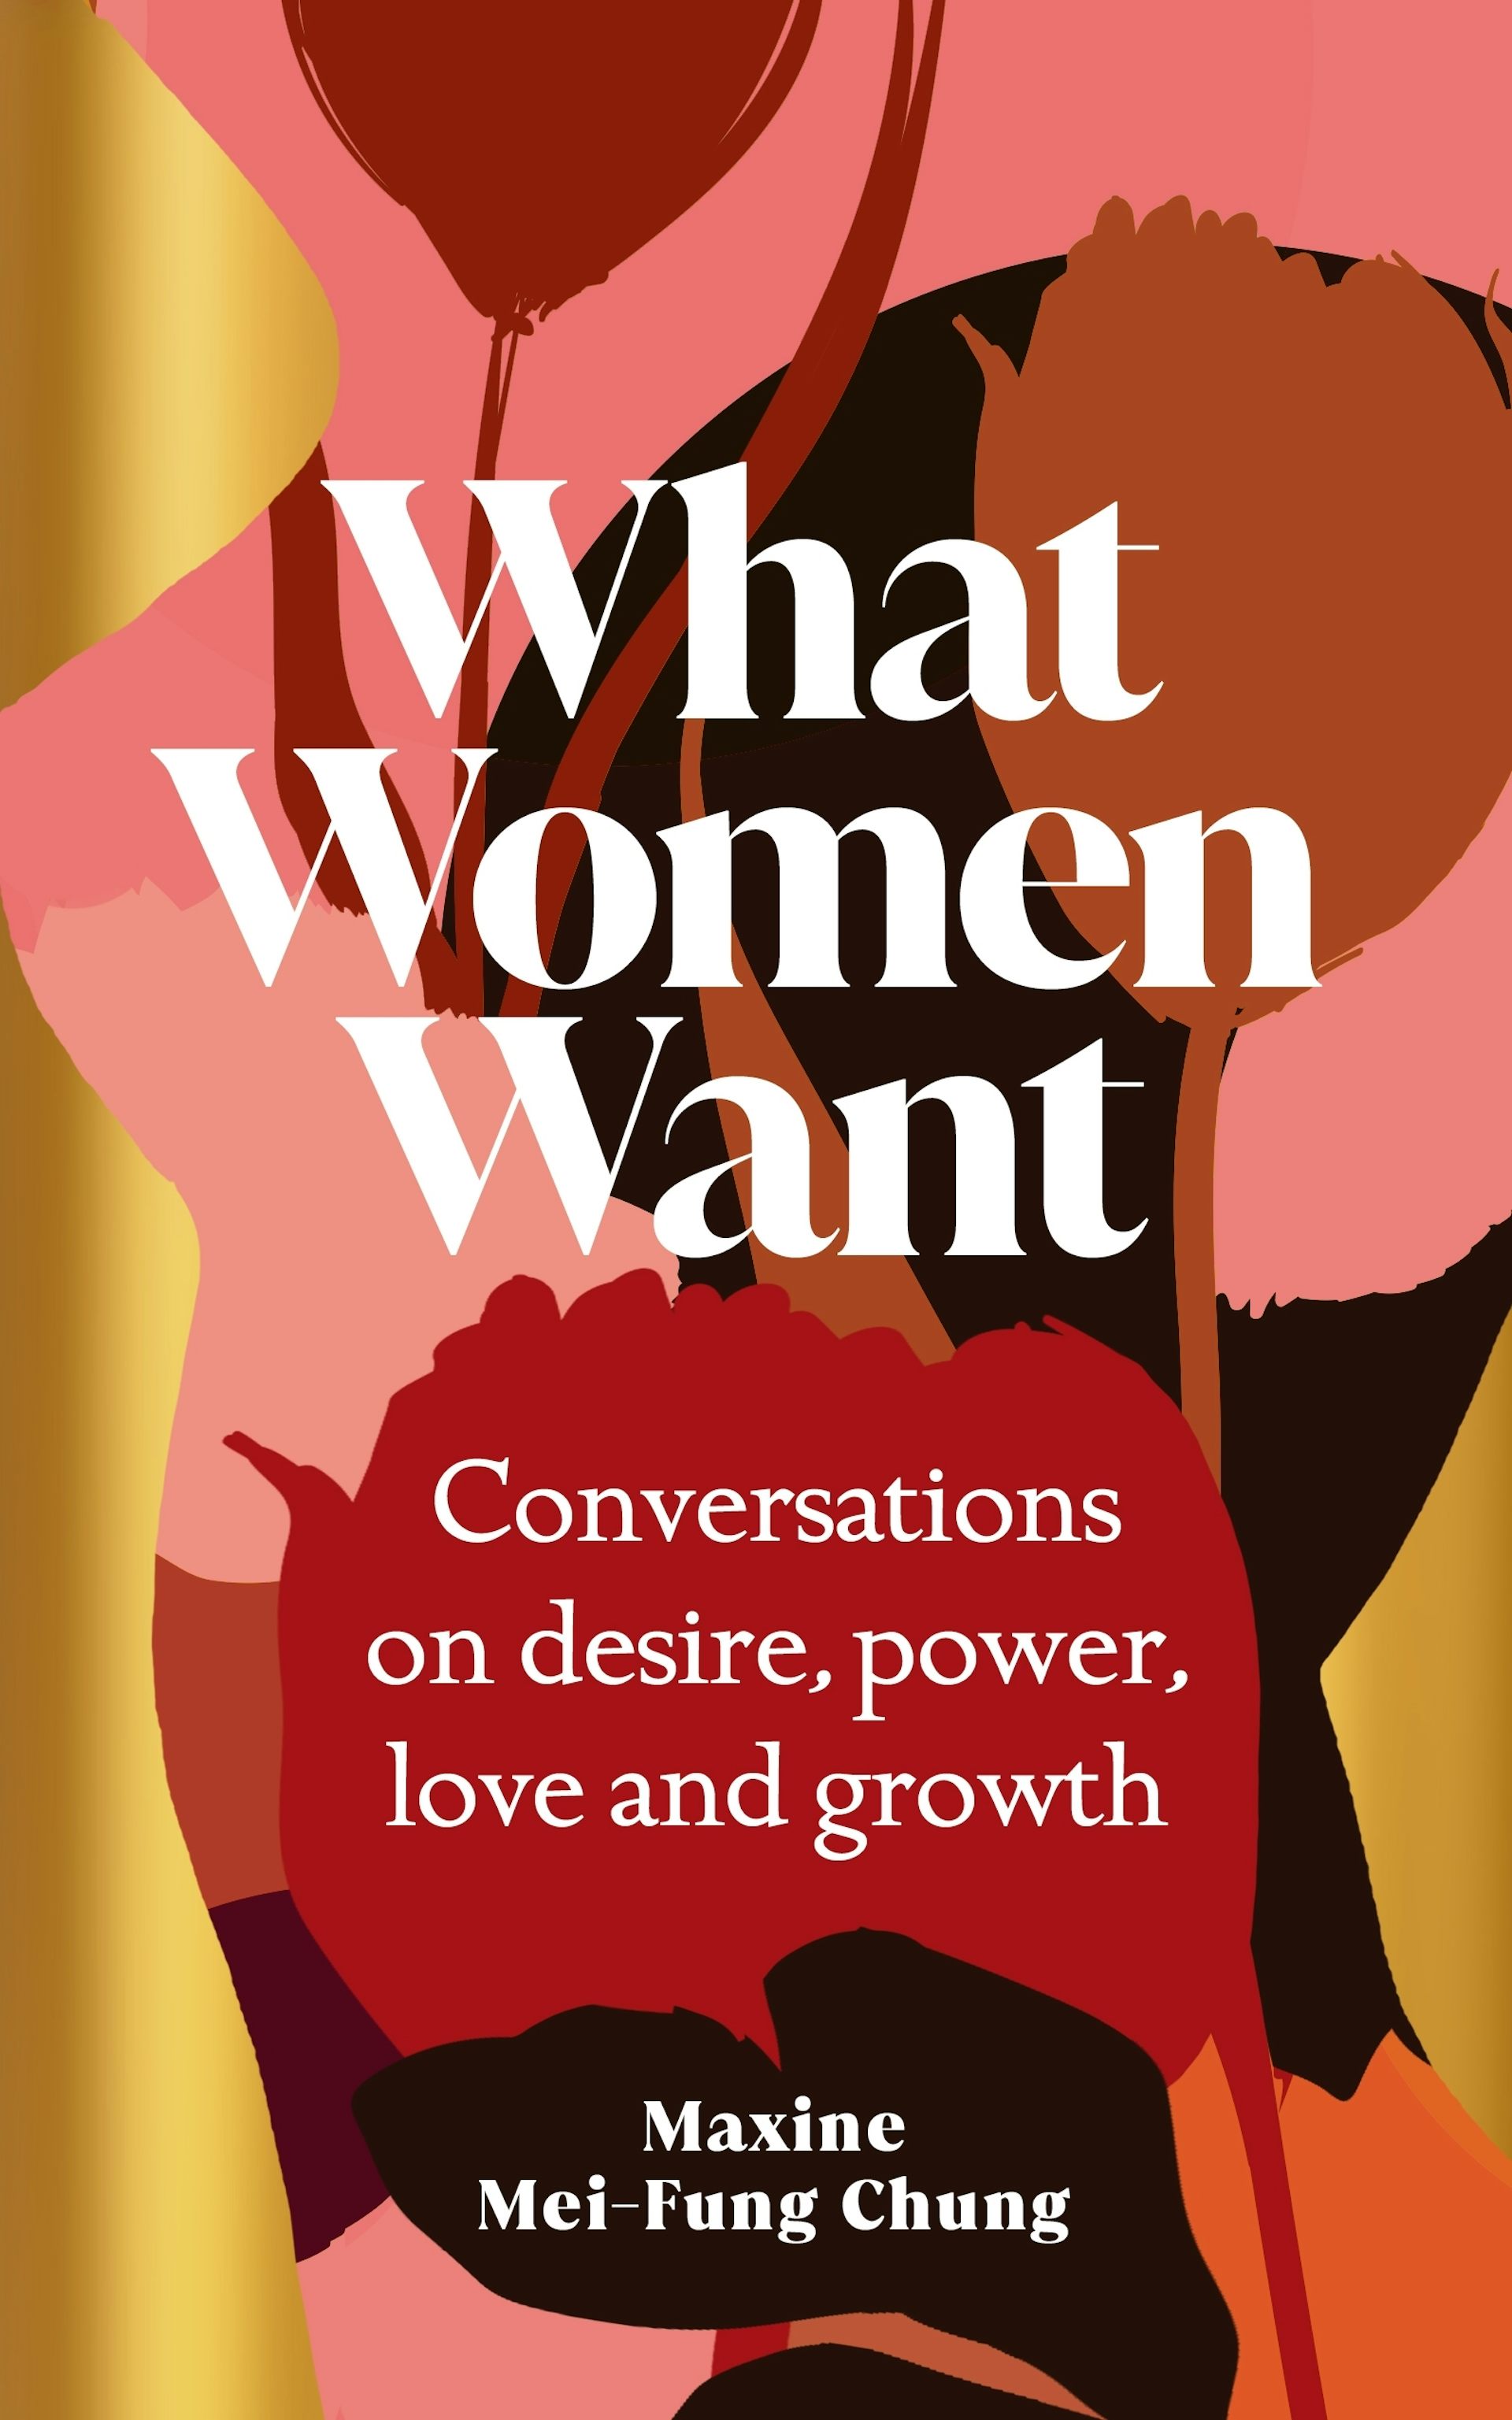 What do women want? Freuds infamous question invites voyeurism photo